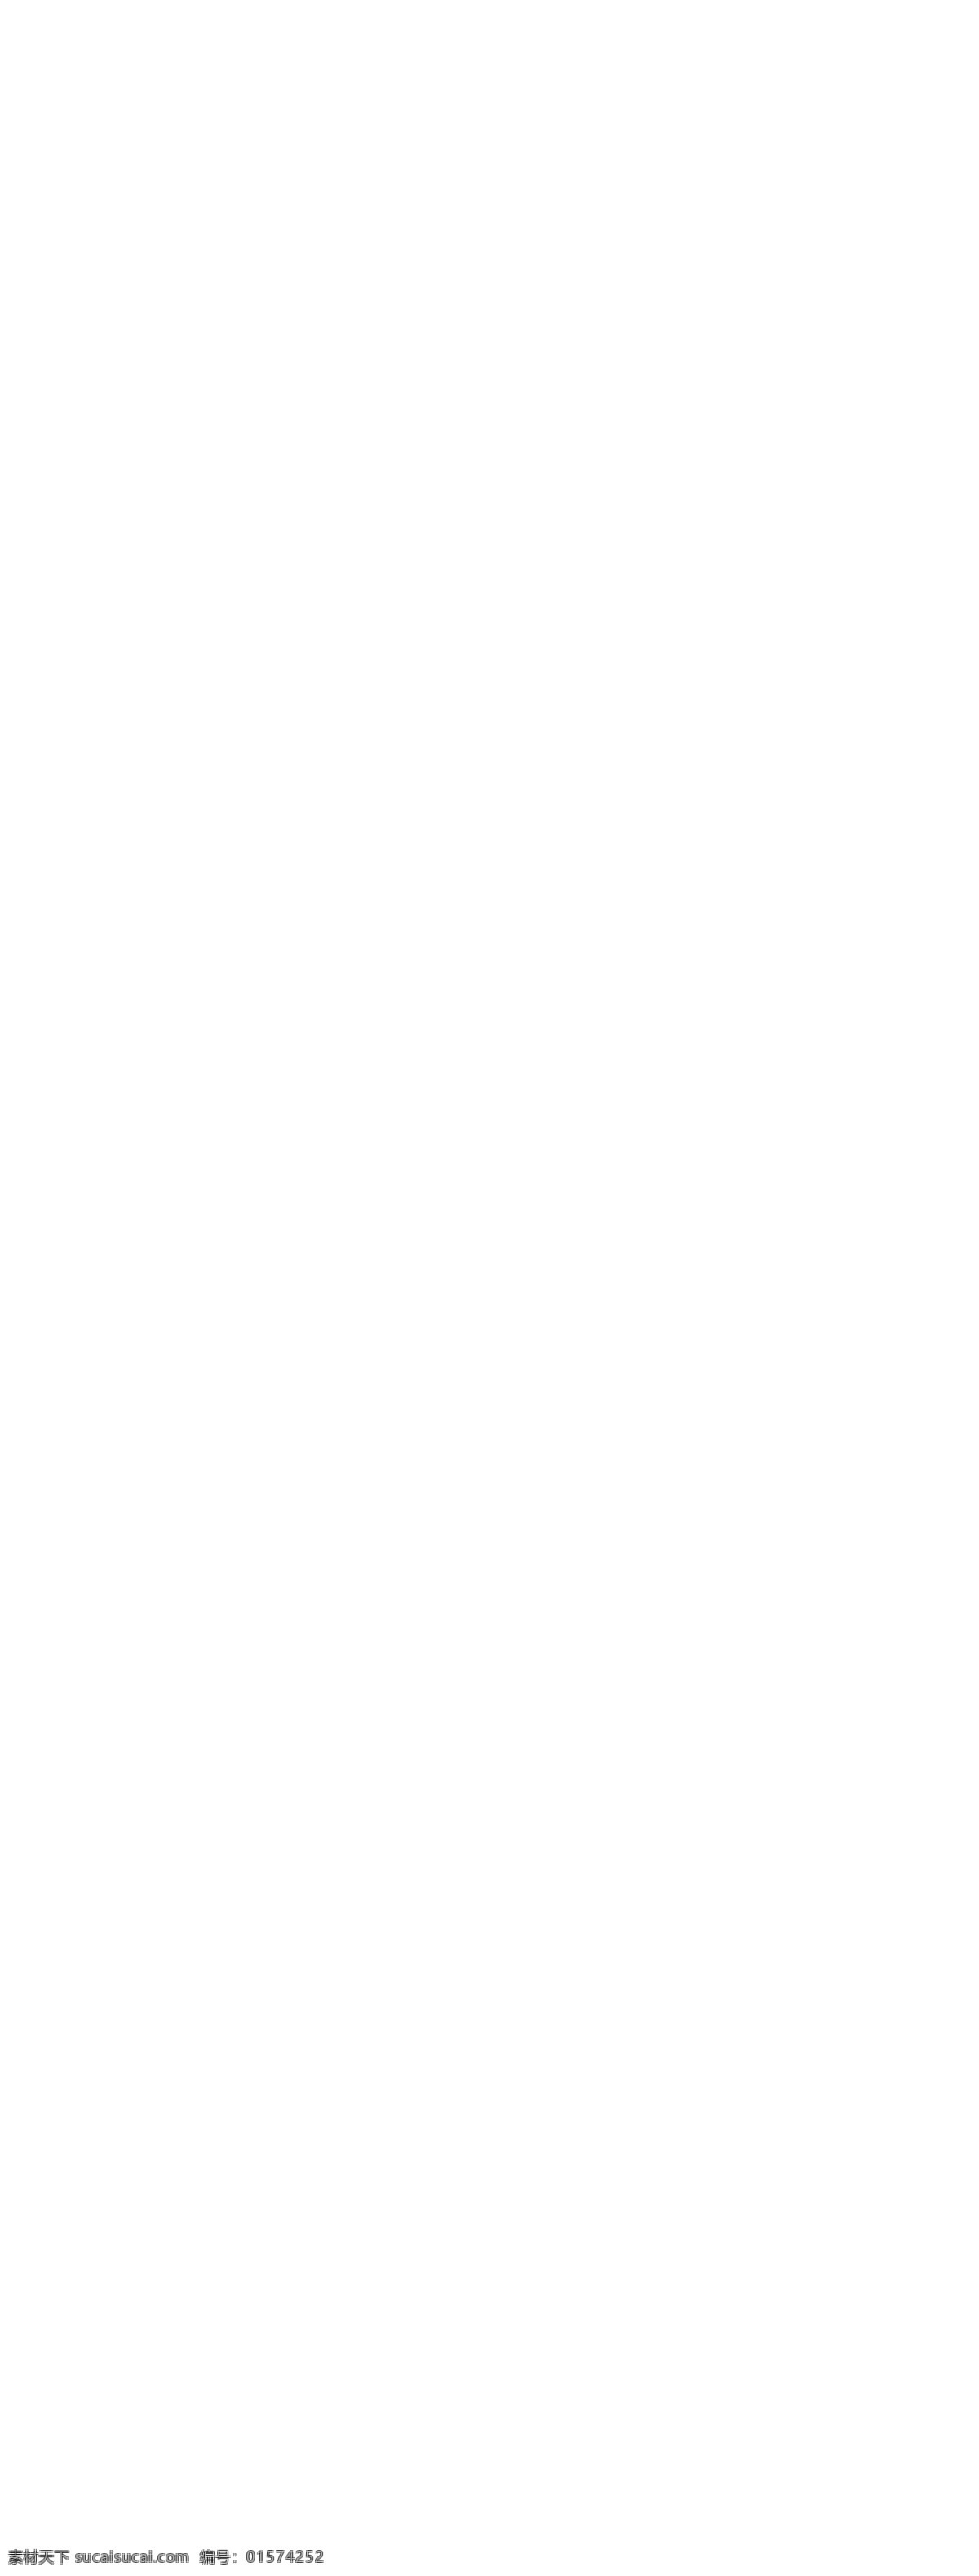 2018 粉 紫色 愚人节 电商 淘宝 首页 模板 优惠券 天猫 促销 2018年 粉紫色 电商淘宝首页 模板设计 愚人劫 食品 甜品 满减促销 大促 四月 一日 吃货 节 棒棒糖 美食 通用模板